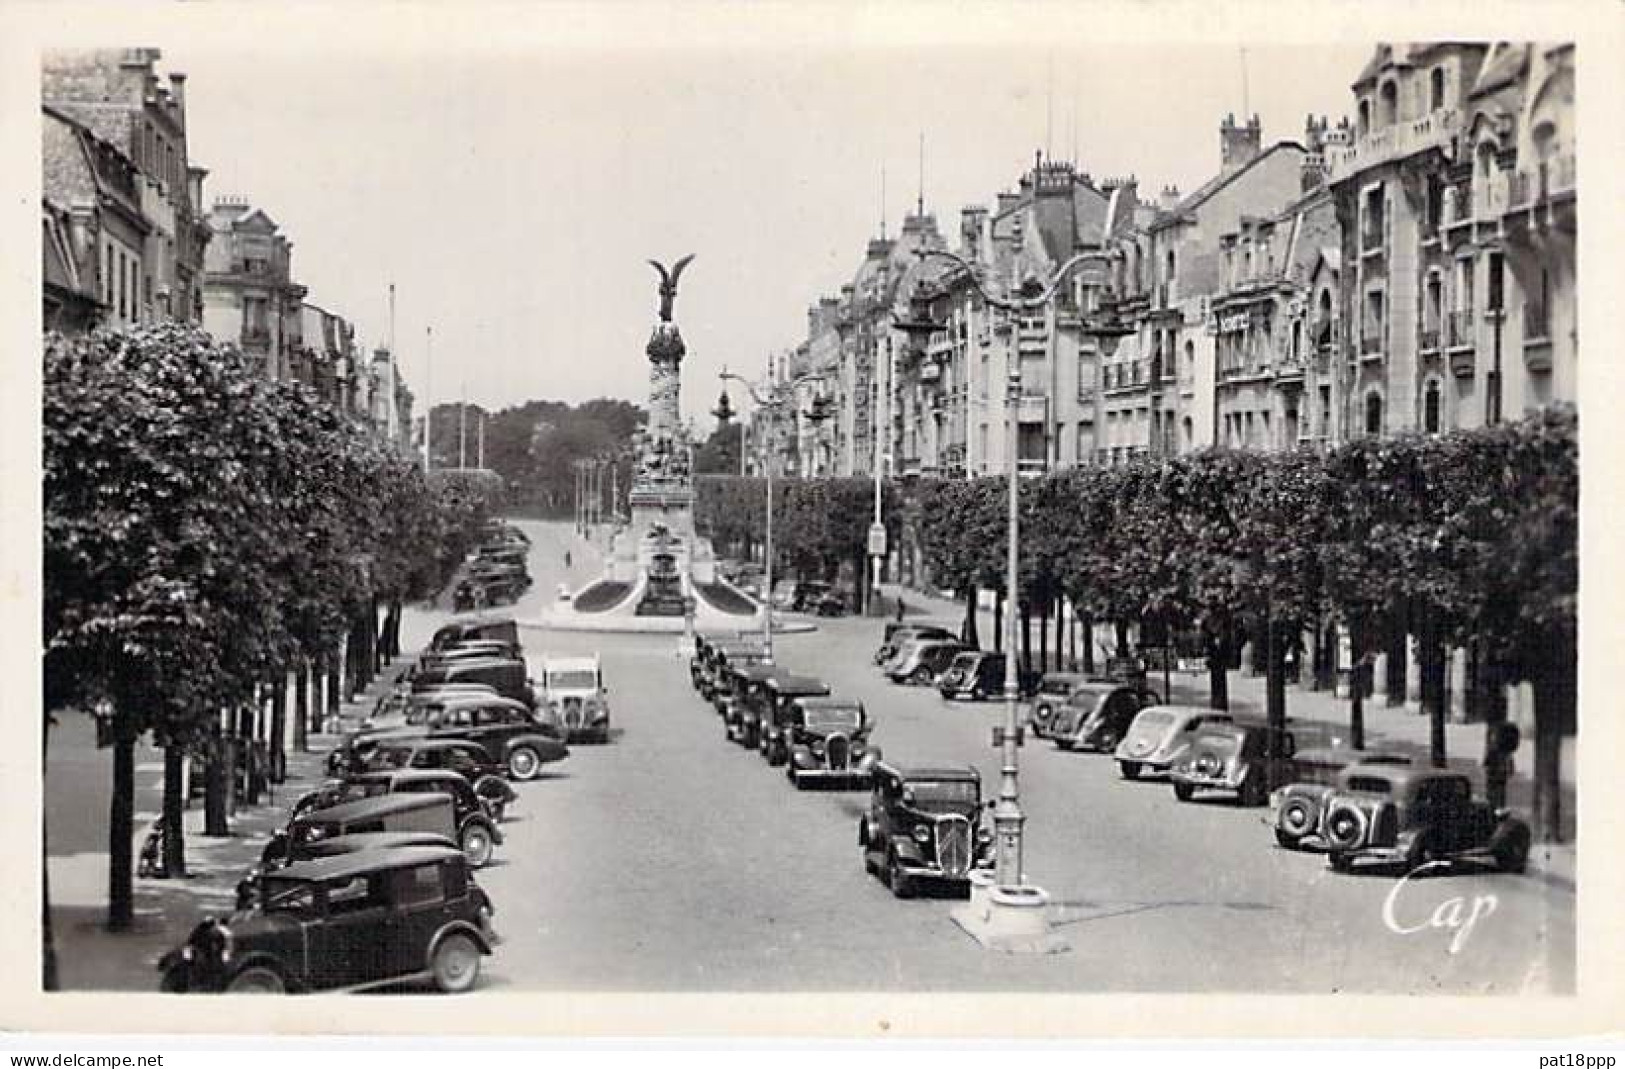 FRANCE - Lot De 20 CPSM Photos Noir Et Blanc Format CPA Années 1945-1960's En BON ETAT (Cf Détails Dans Description) - 5 - 99 Cartes